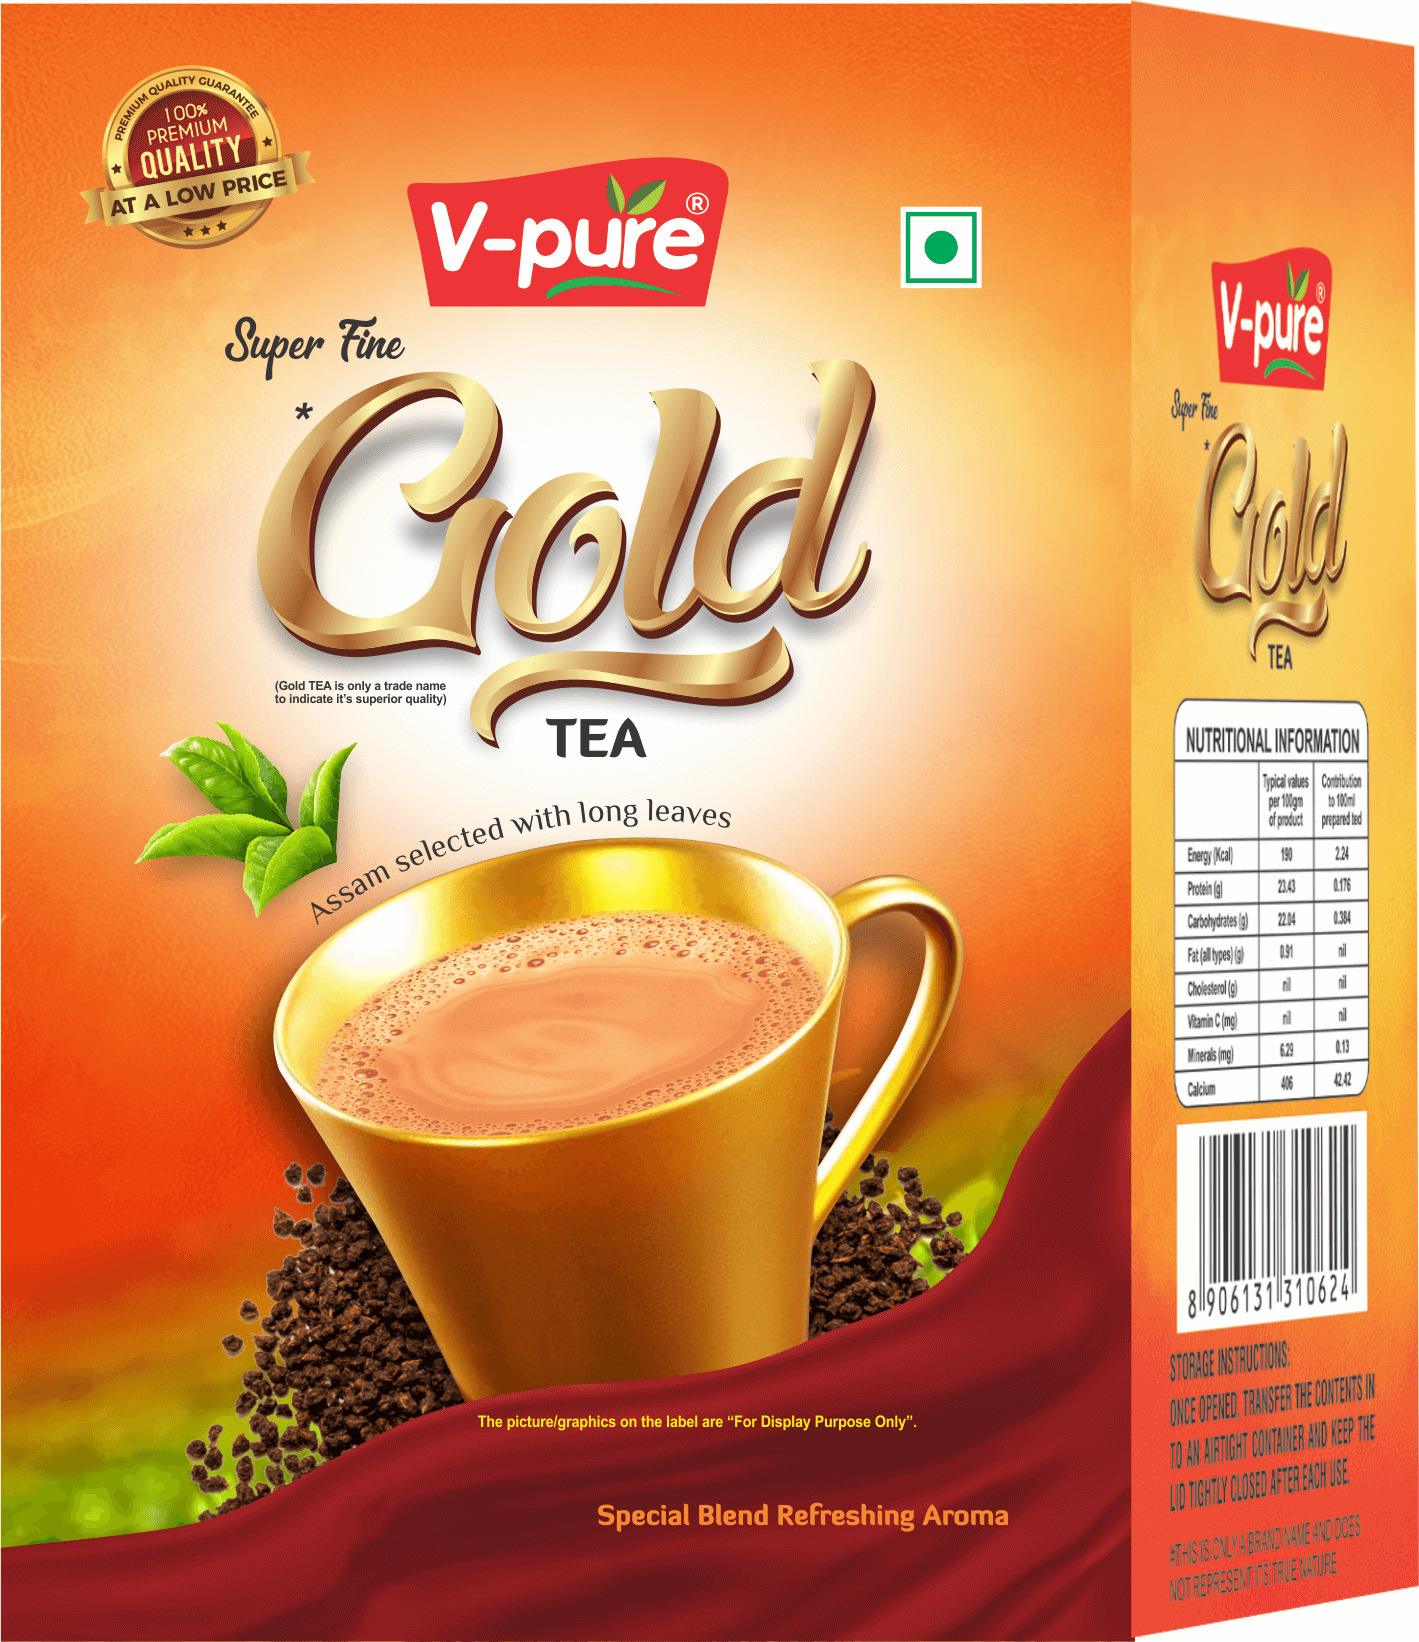 V-pure Gold Tea